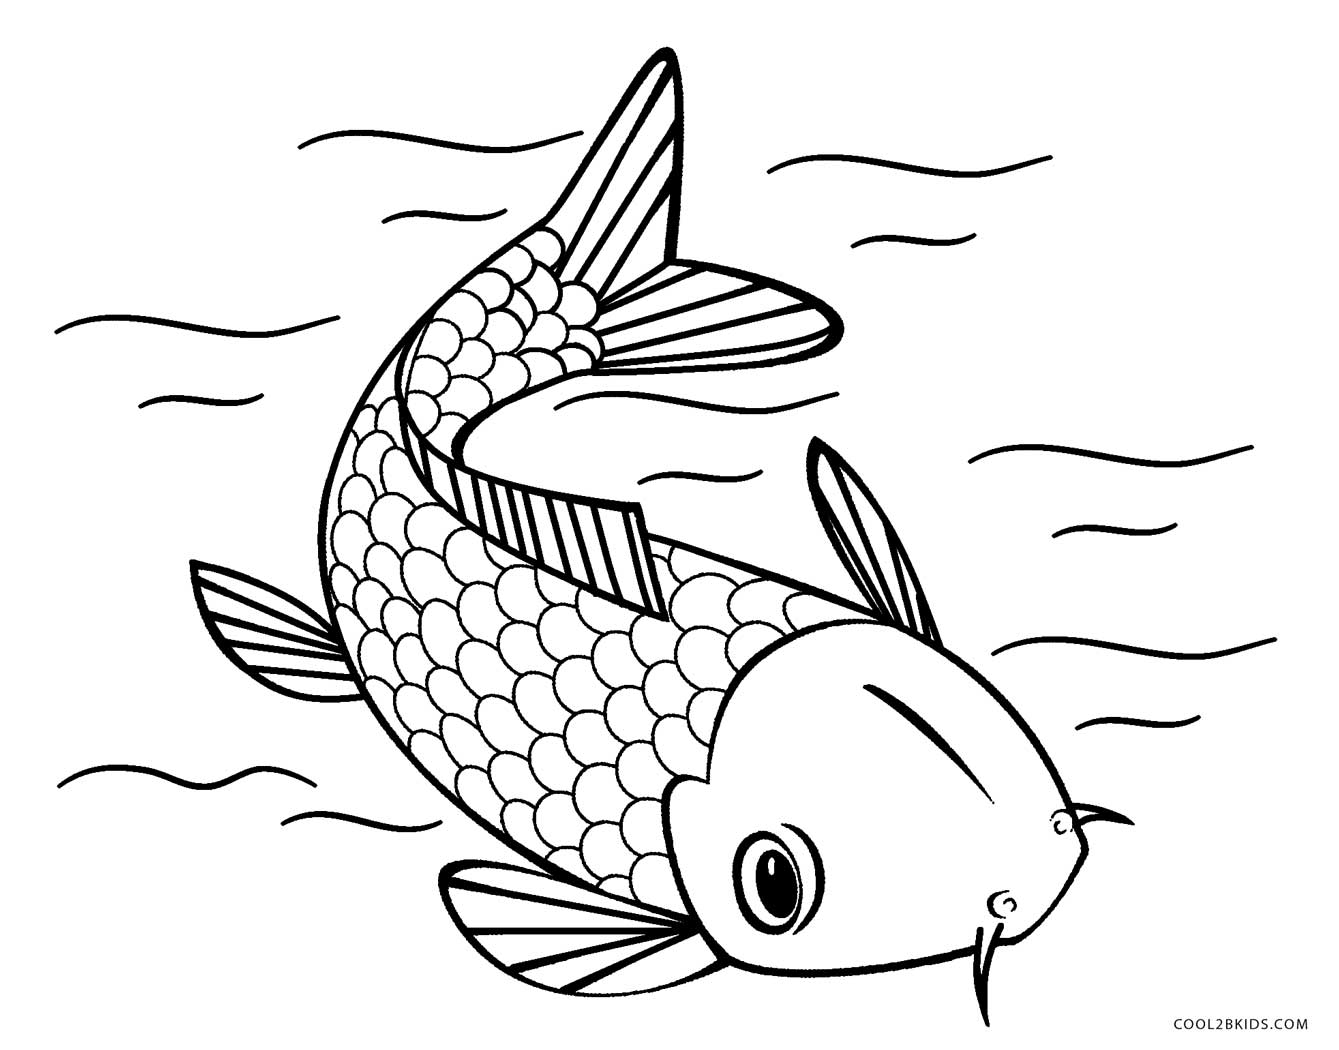 Ausmalbilder Fisch - Malvorlagen kostenlos zum ausdrucken